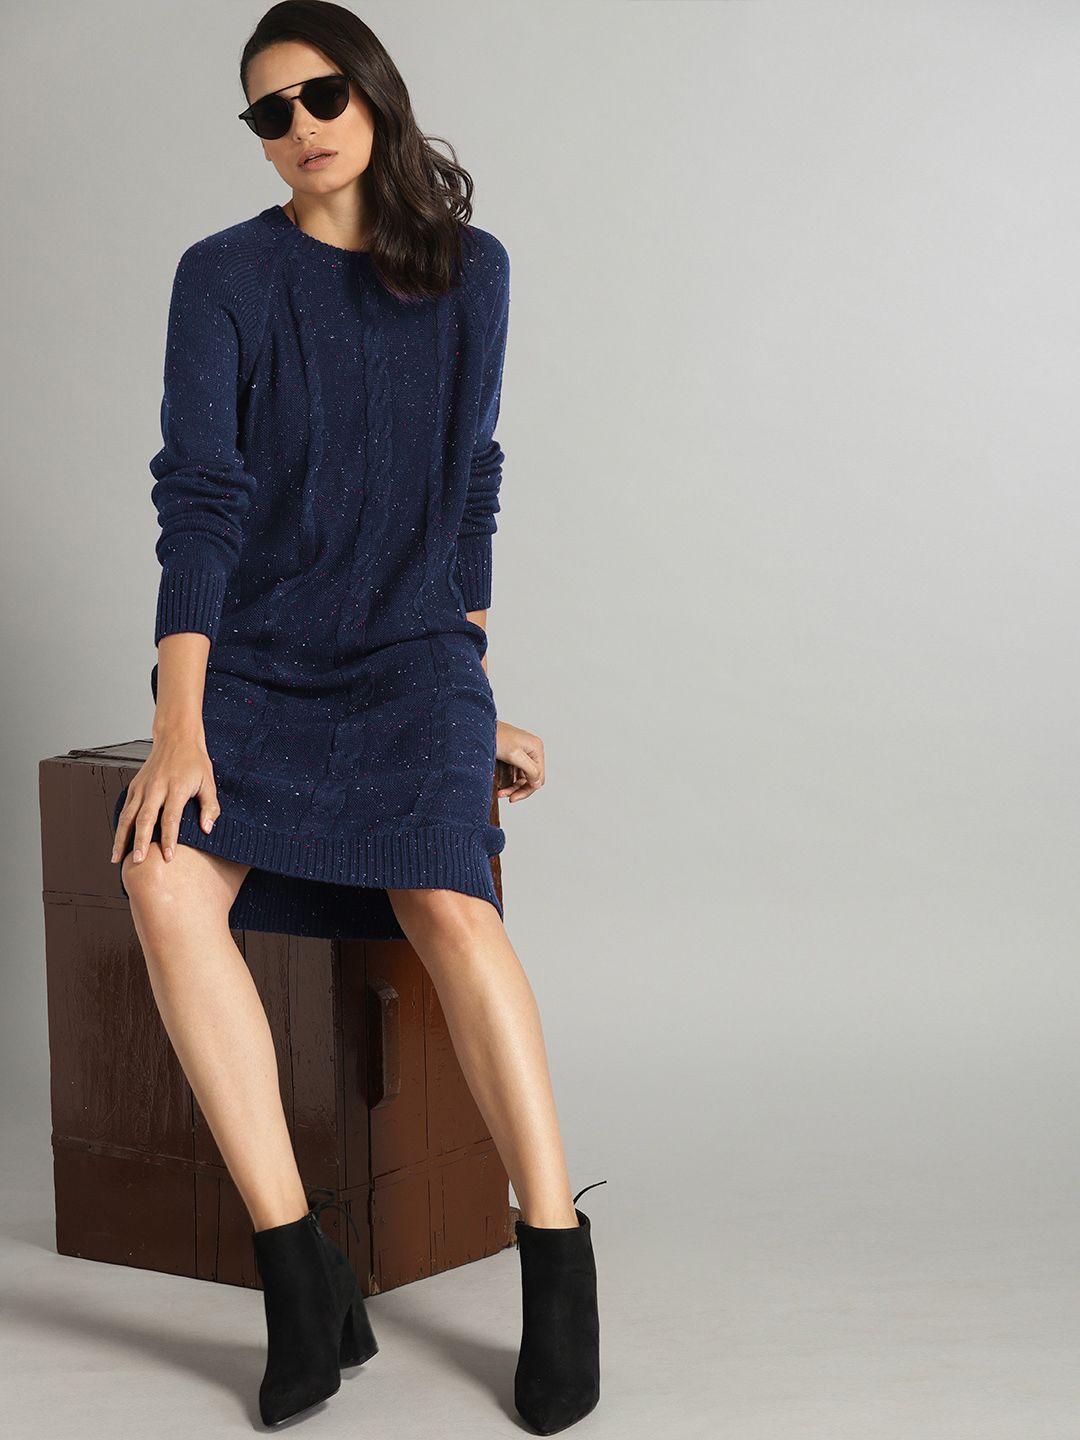 roadster women navy blue self design knitted jumper dress